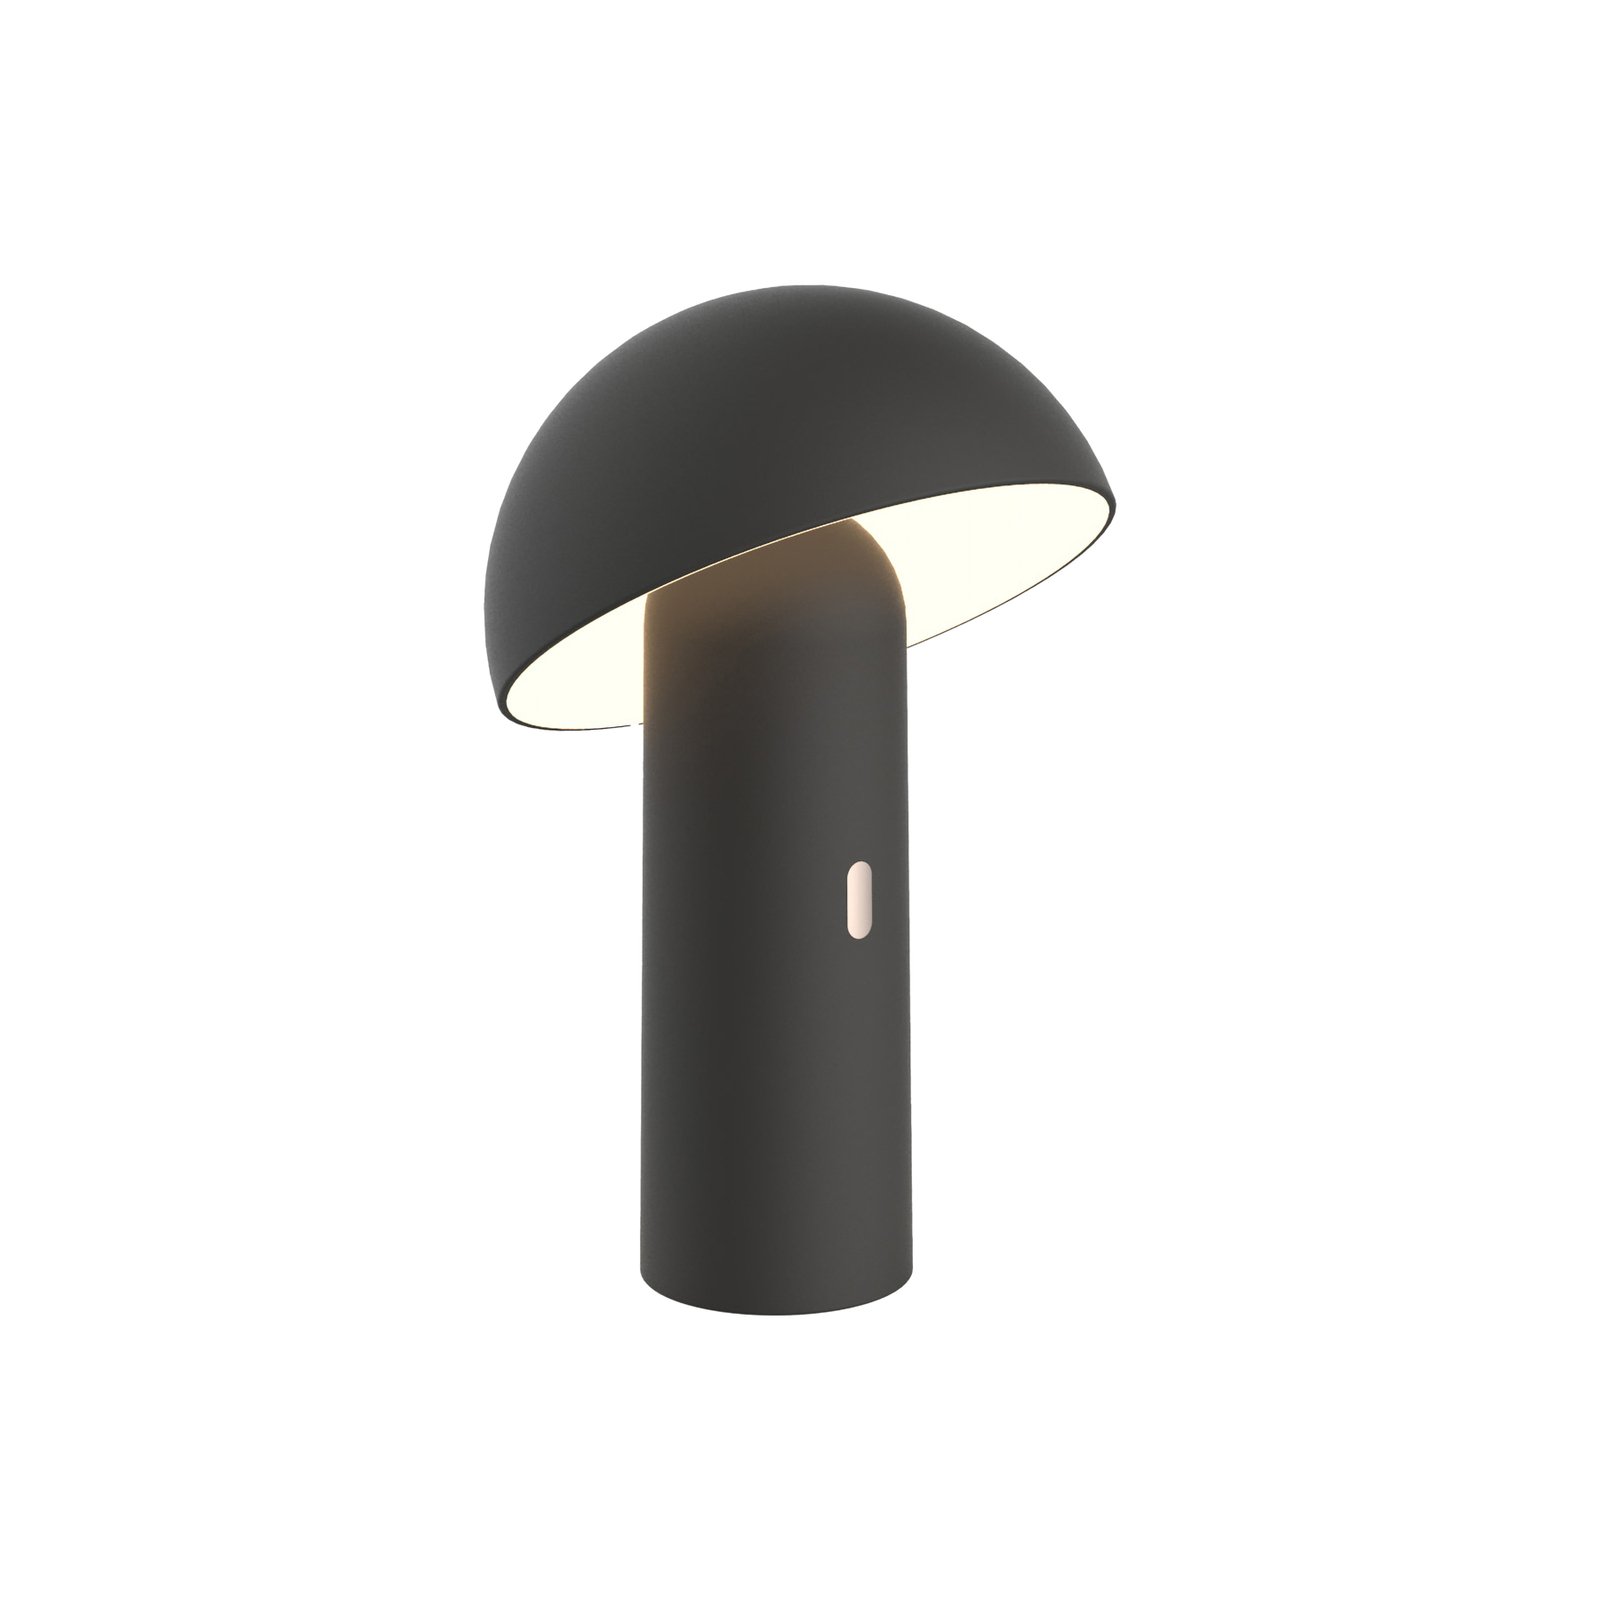 Aluminor Capsule stolová LED lampa mobilná čierna